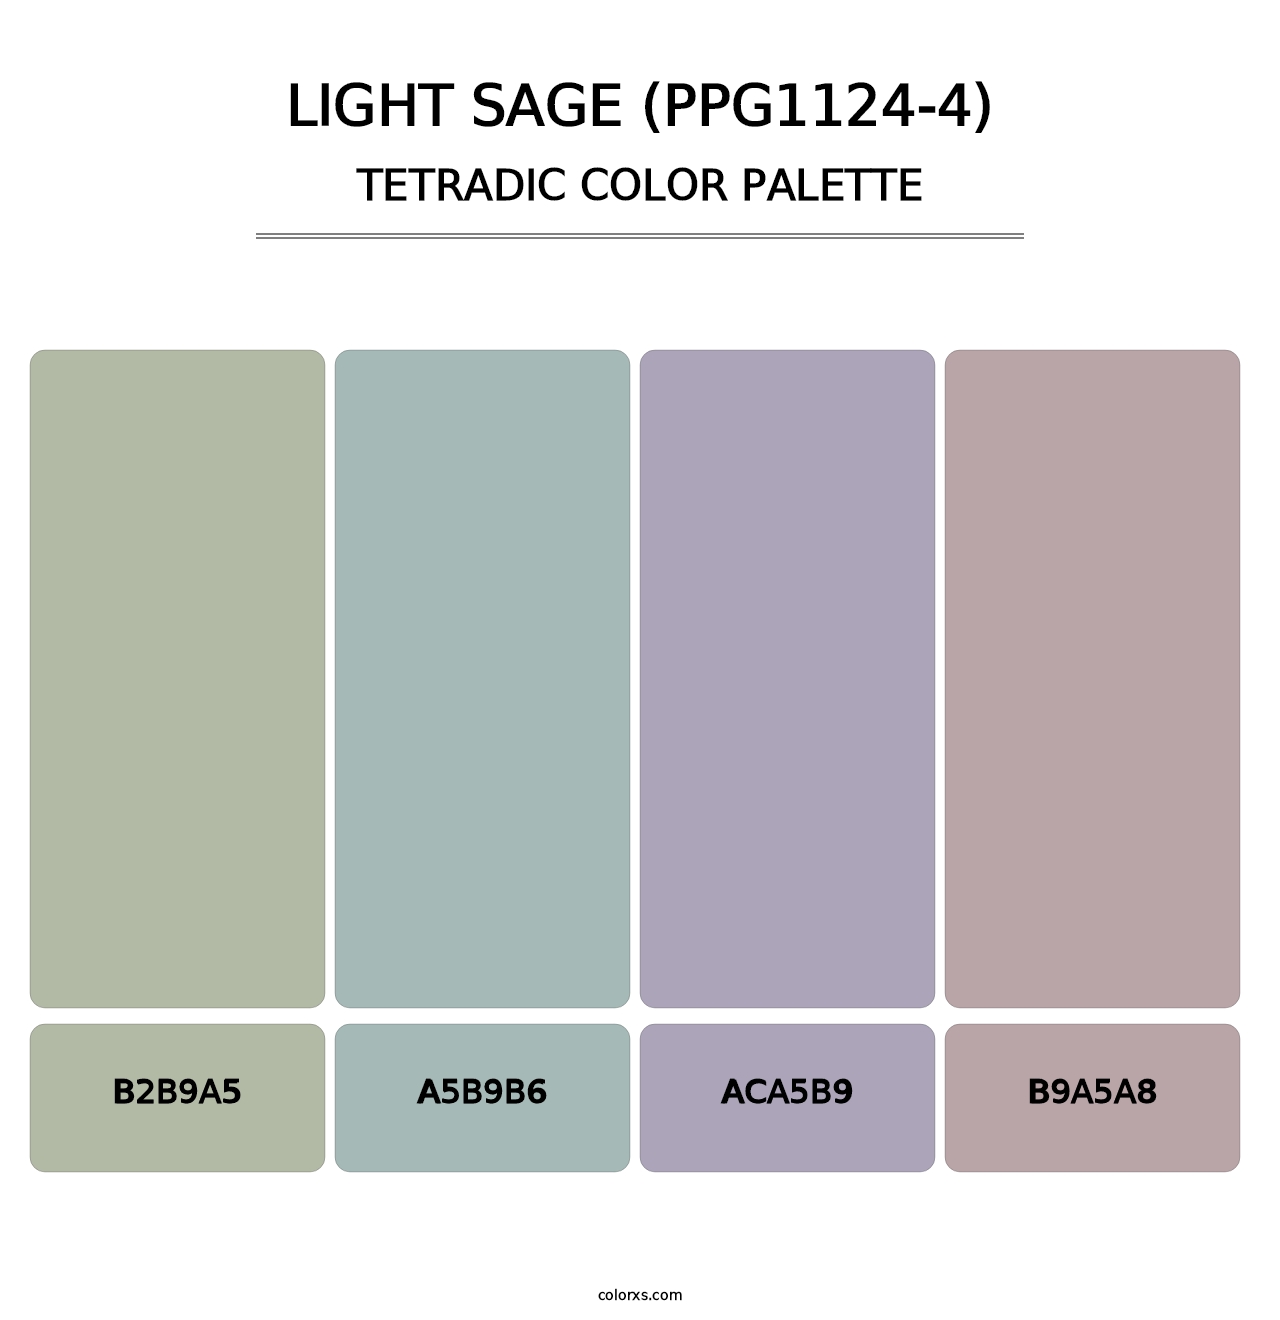 Light Sage (PPG1124-4) - Tetradic Color Palette